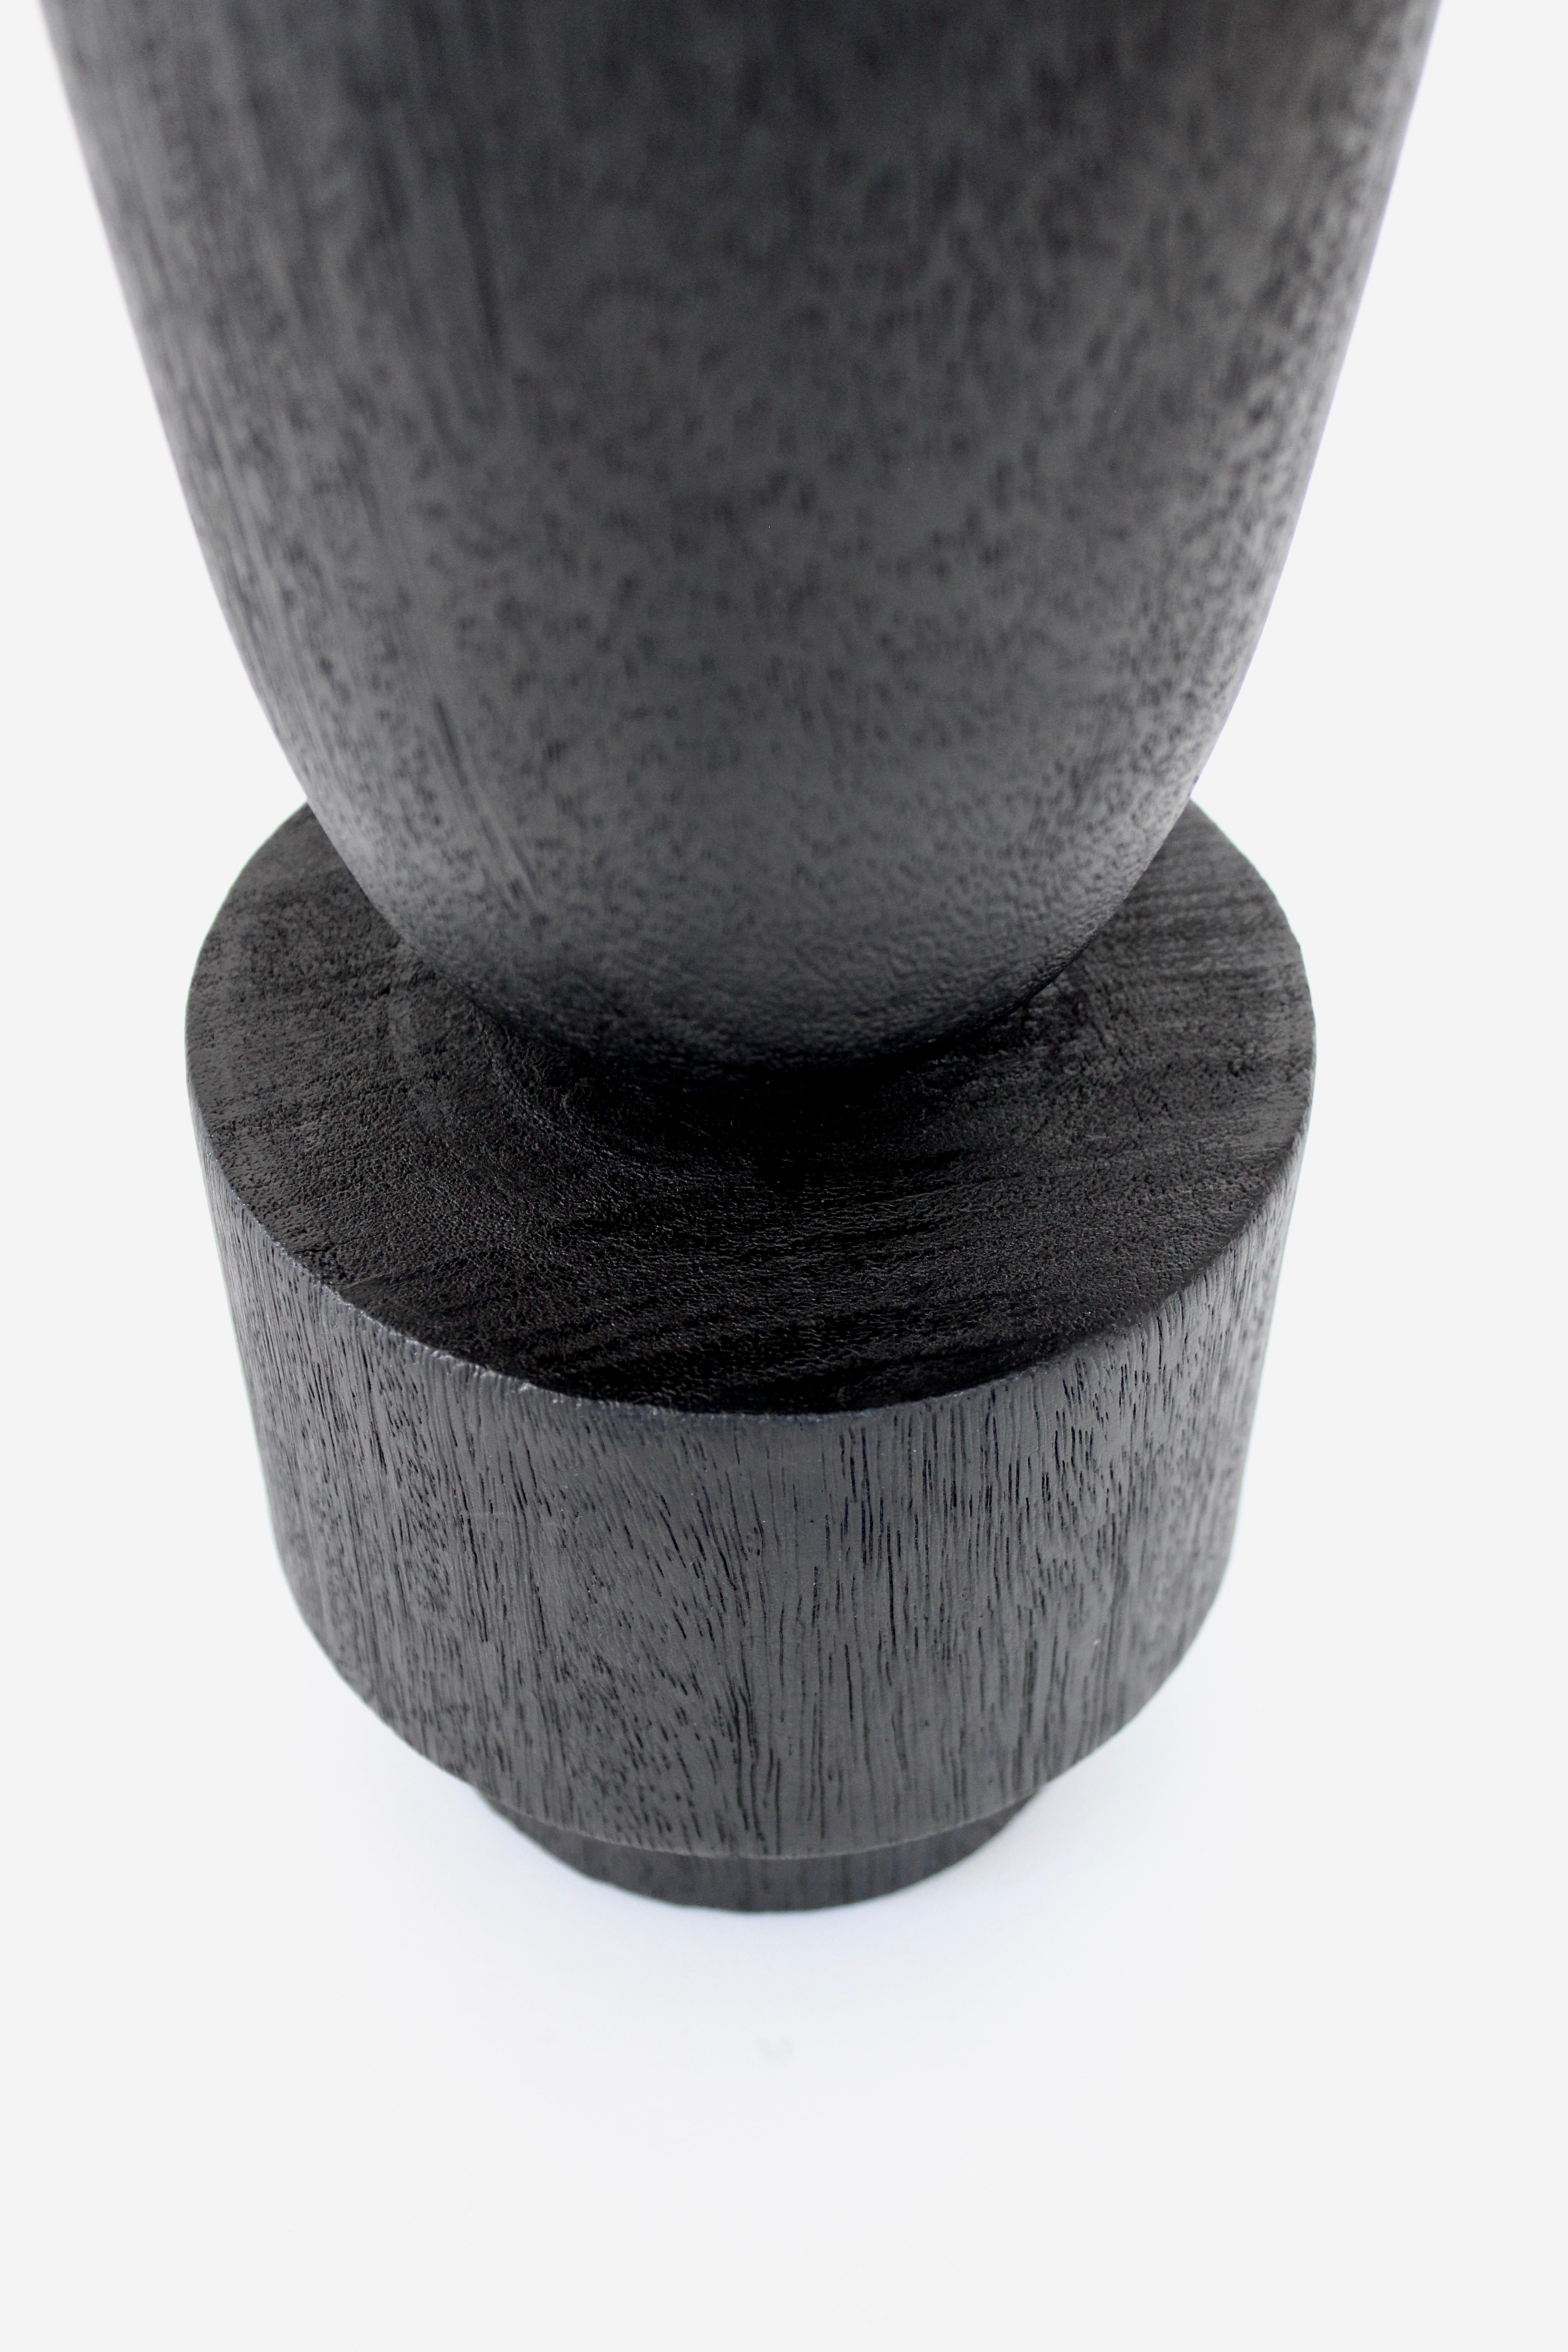 Arno Declercq Babel-Vase aus Iroko-Holz  (21. Jahrhundert und zeitgenössisch)